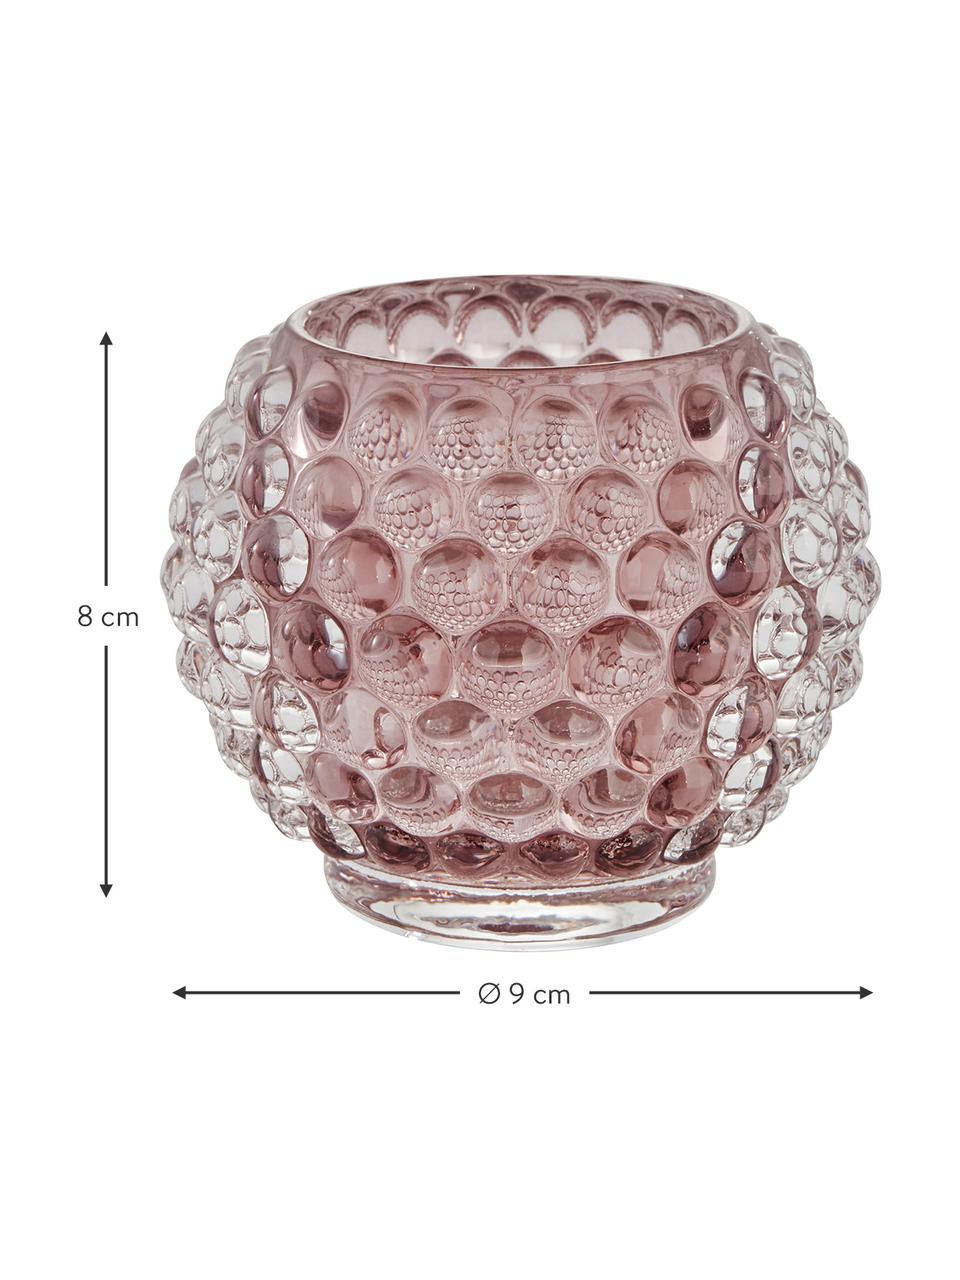 Handgefertigter Teelichthalter Doria in Rosa, Glas, Rosa, transparent, Ø 9 x H 8 cm